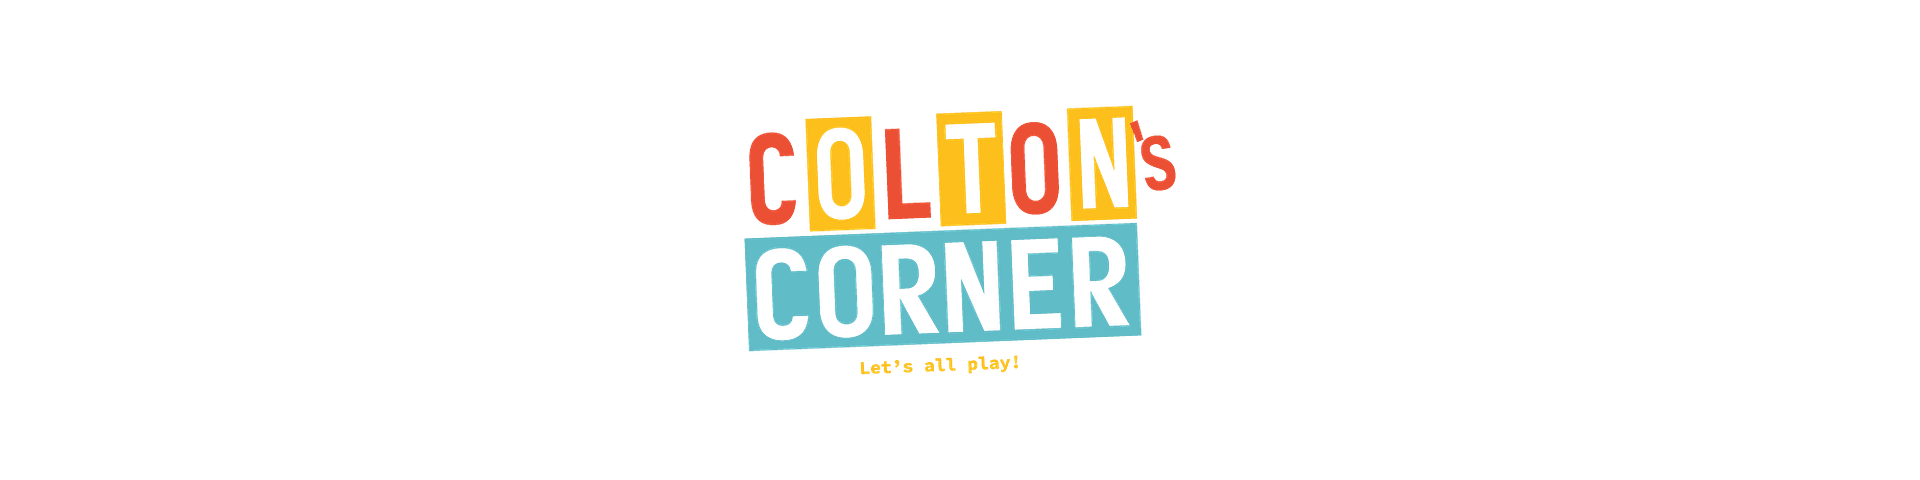 Colton's Corner 2021